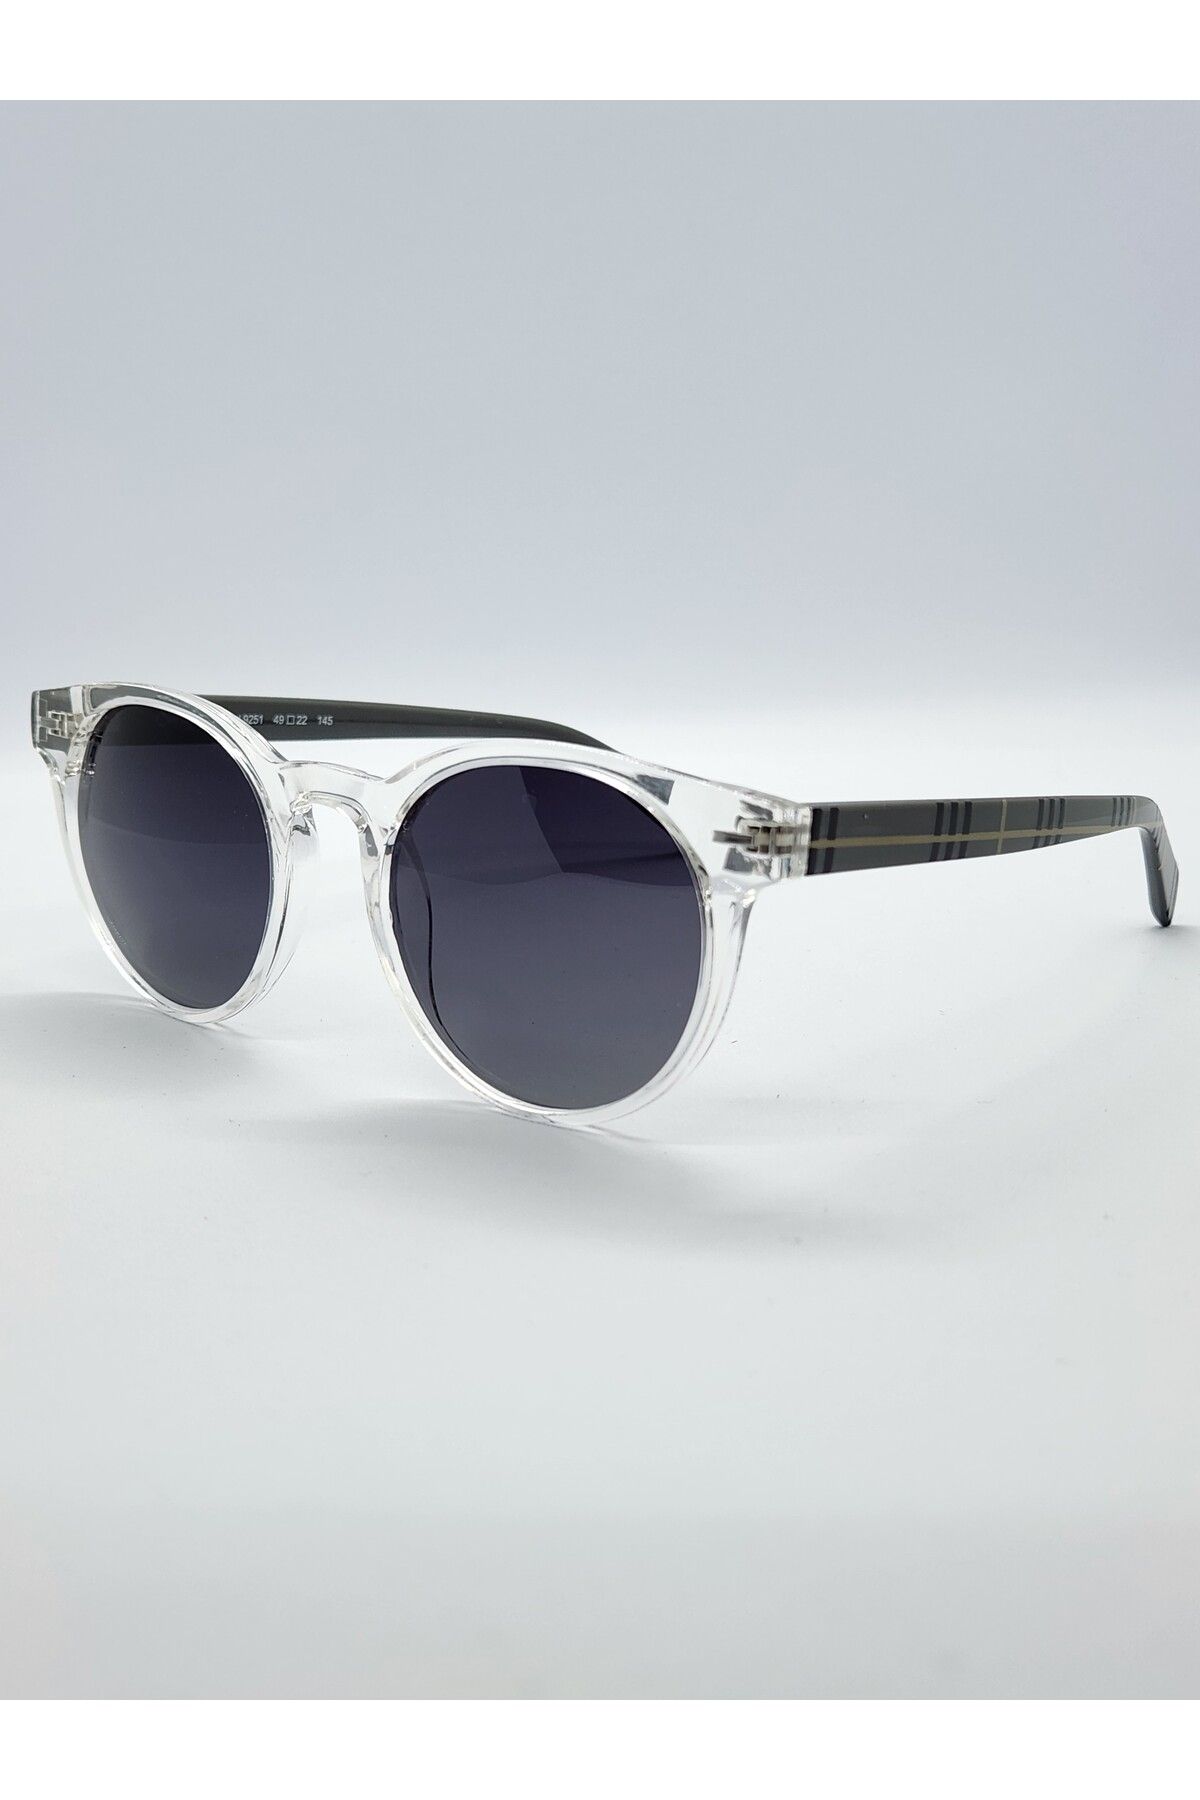 Benx Sunglasses Yuvarlak Model Şeffaf Güneş Gözlüğü